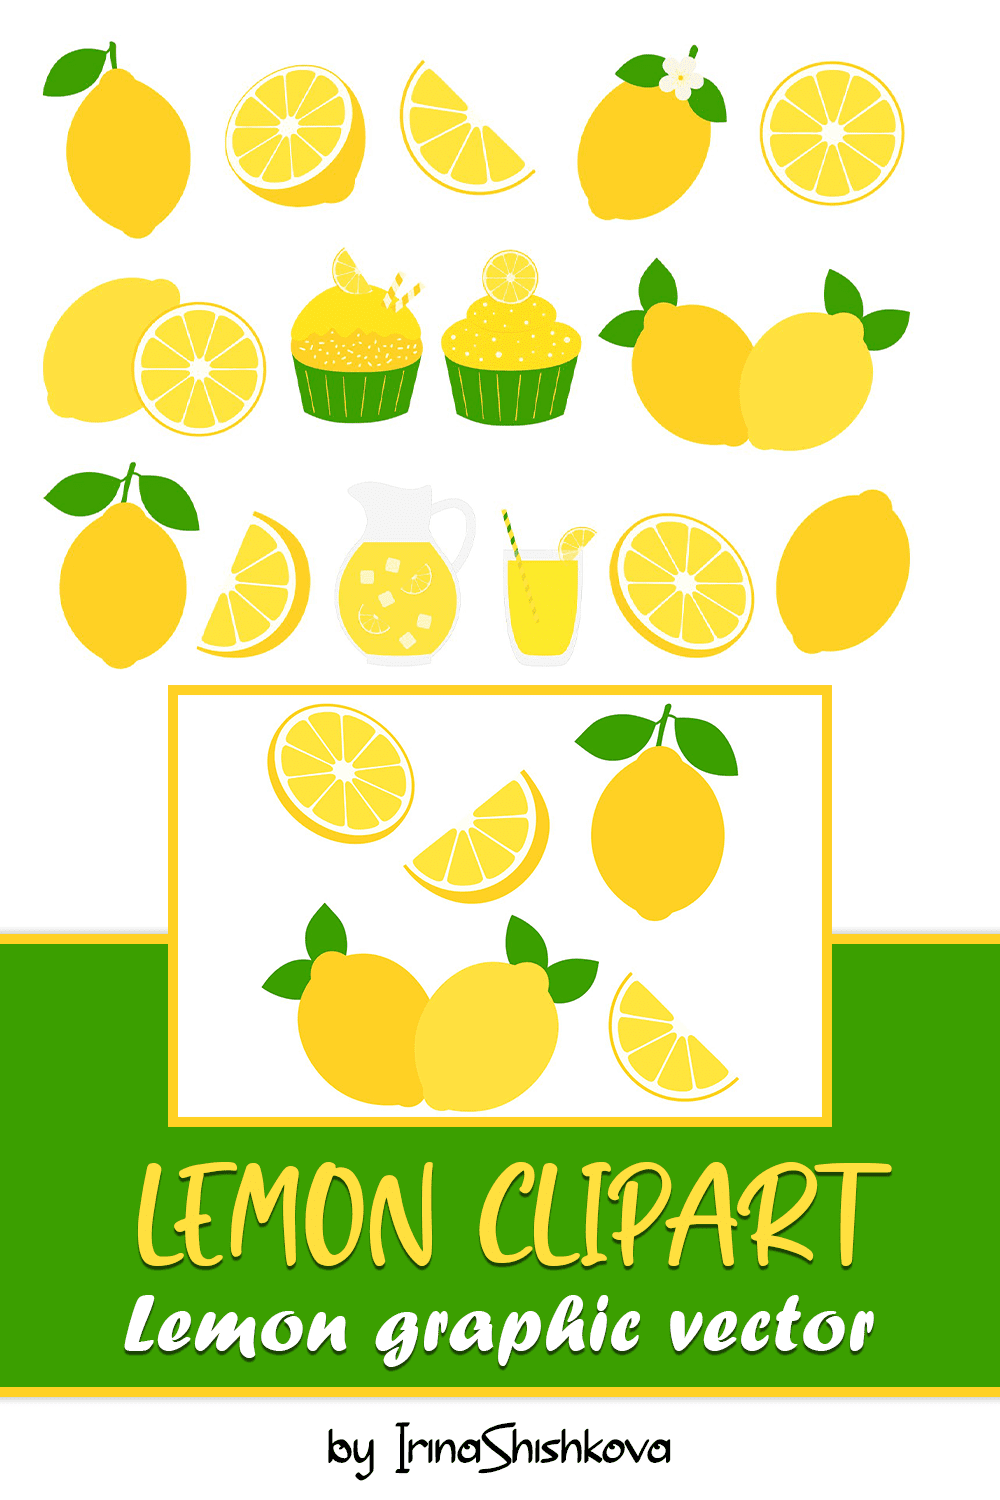 lemon clipart. lemon graphic vector pinterest